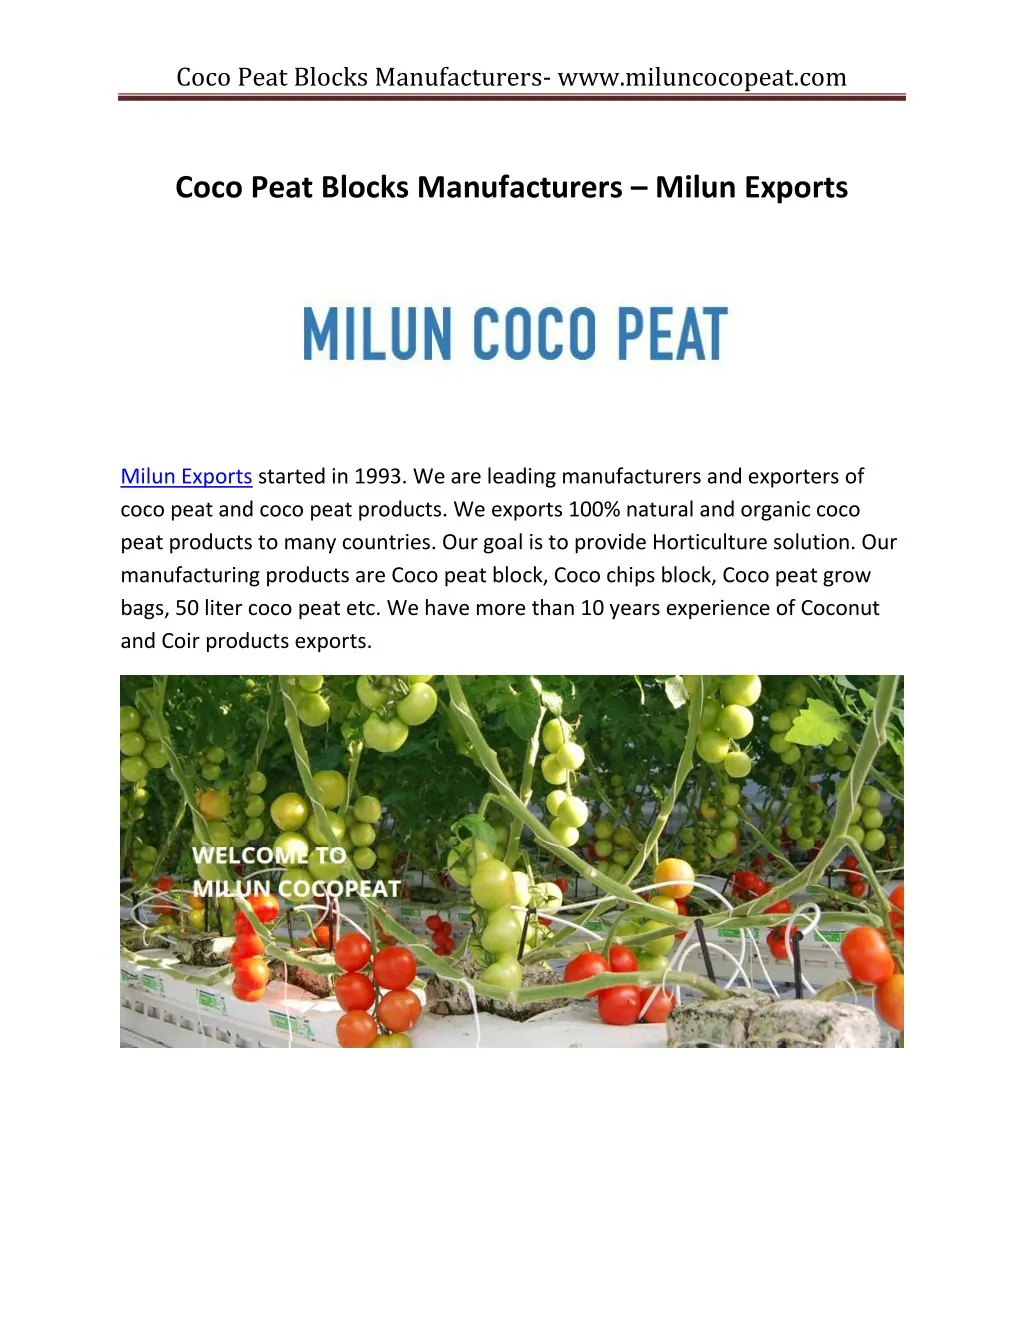 coco peat blocks manufacturers www miluncocopeat